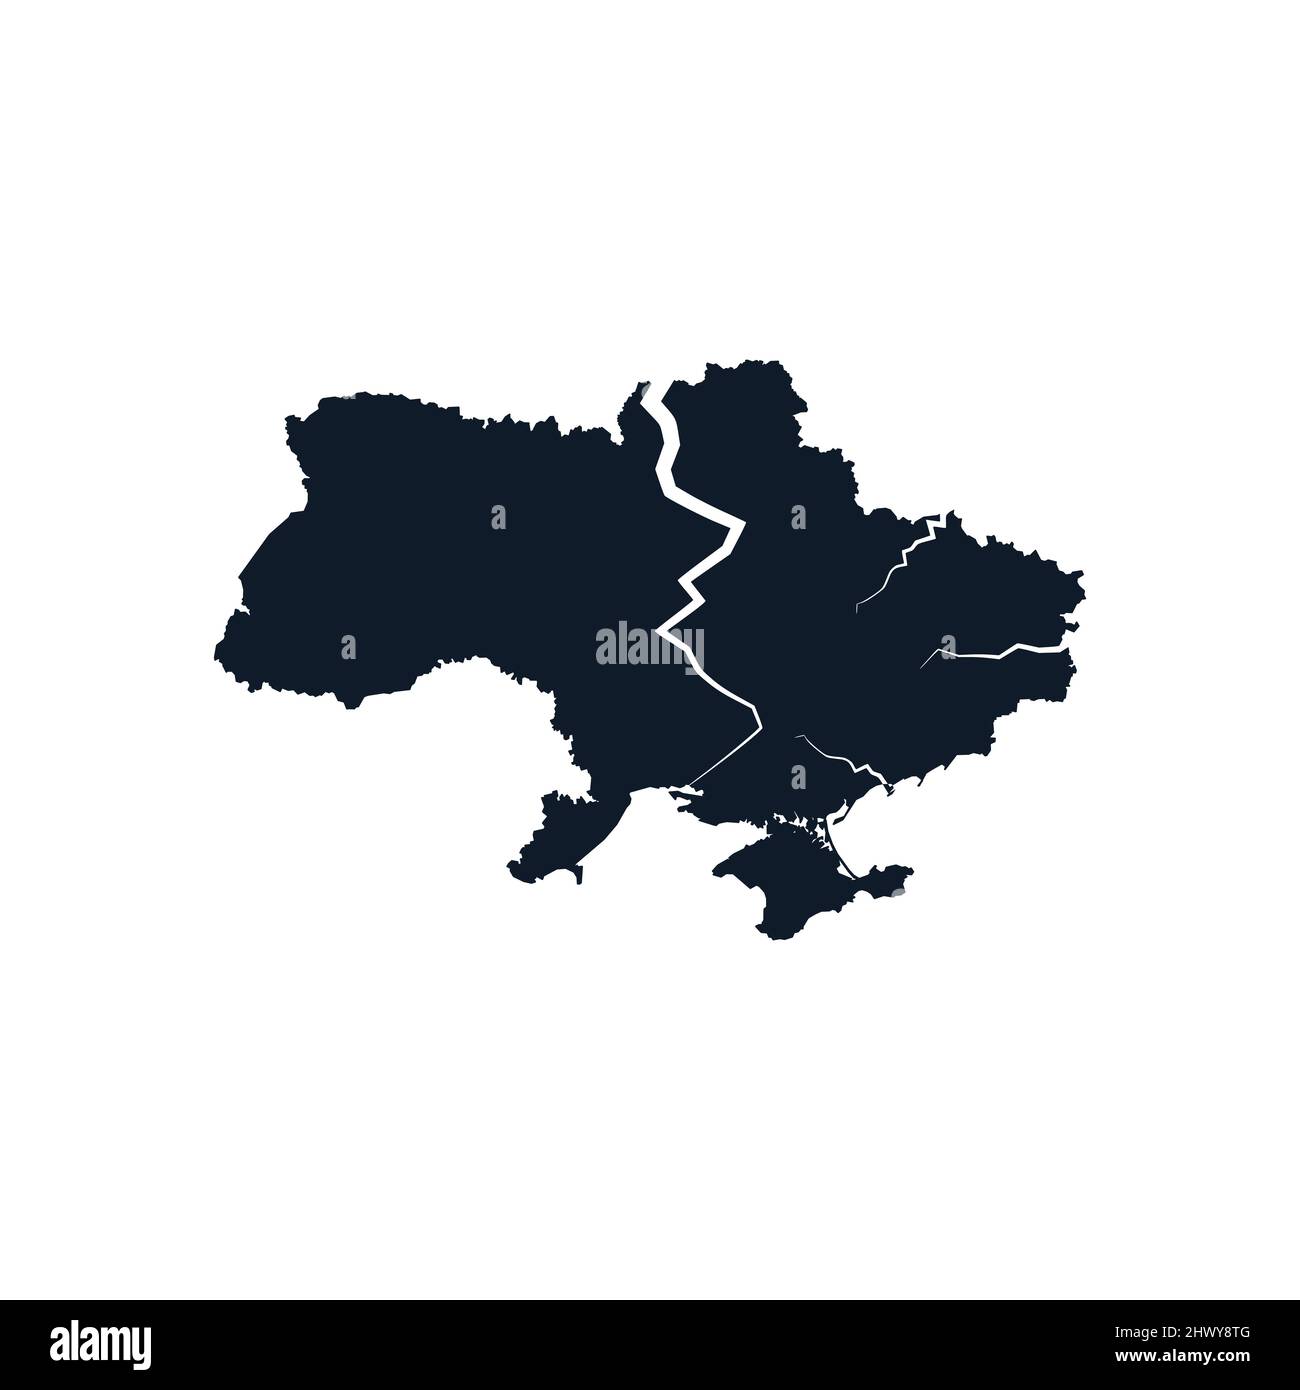 Crack sulla mappa dell'Ucraina - declino, rovina, collasso, fallimento, disintegrazione e decimposizione di paese e stato ucraino. Vettore di stock Illustrazione Vettoriale